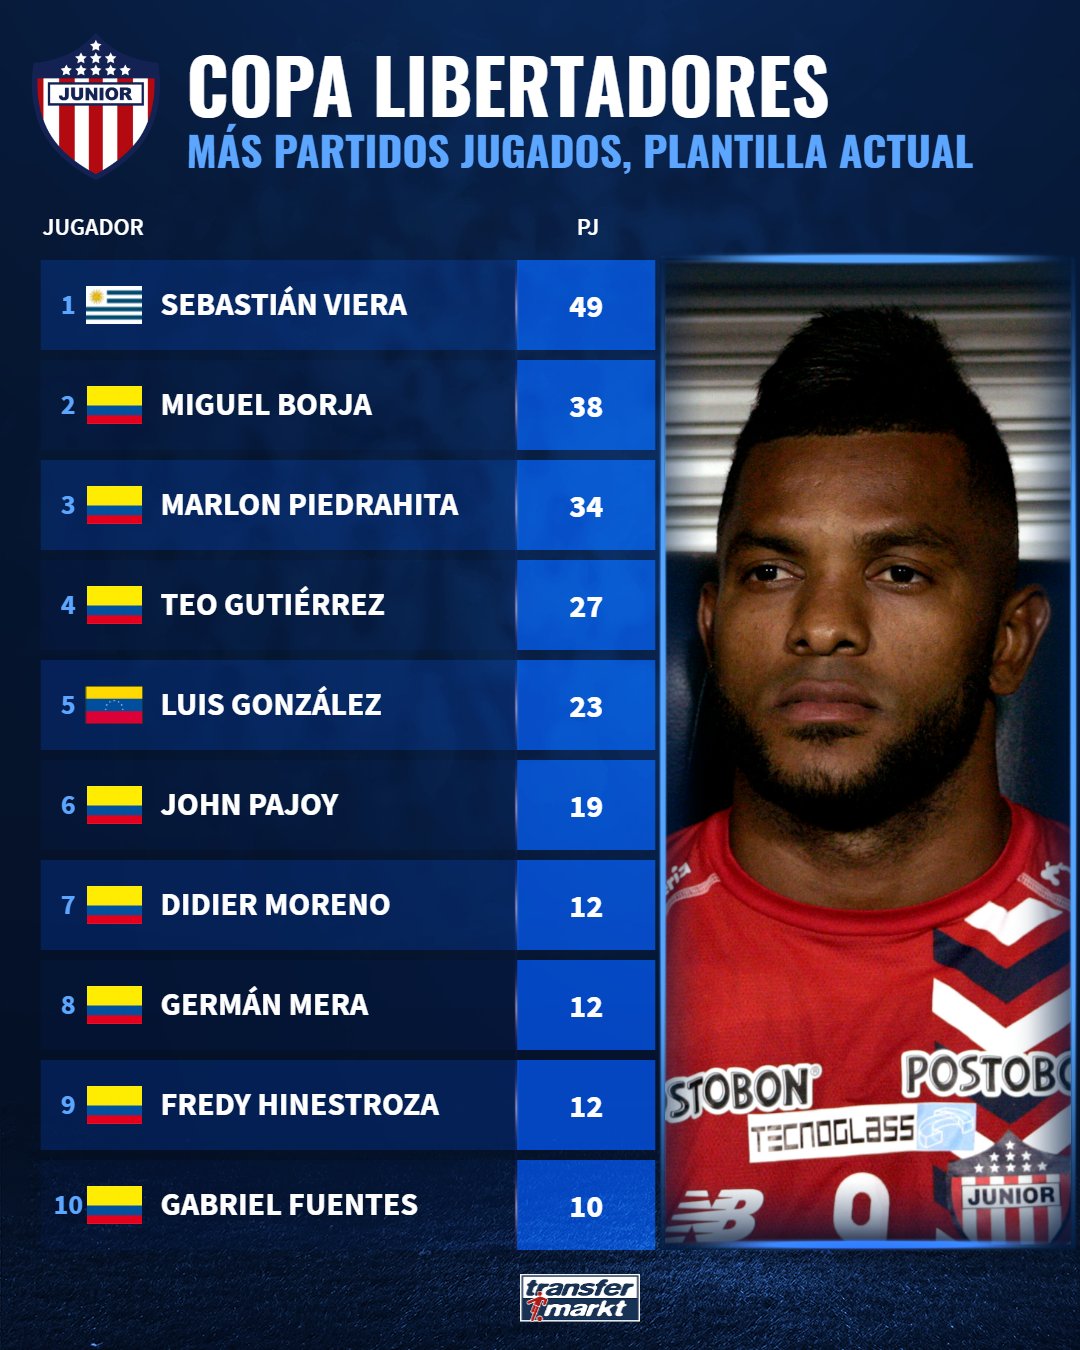 Top-10 de jugadores de Junior con más partidos de Copa Libertadores. 